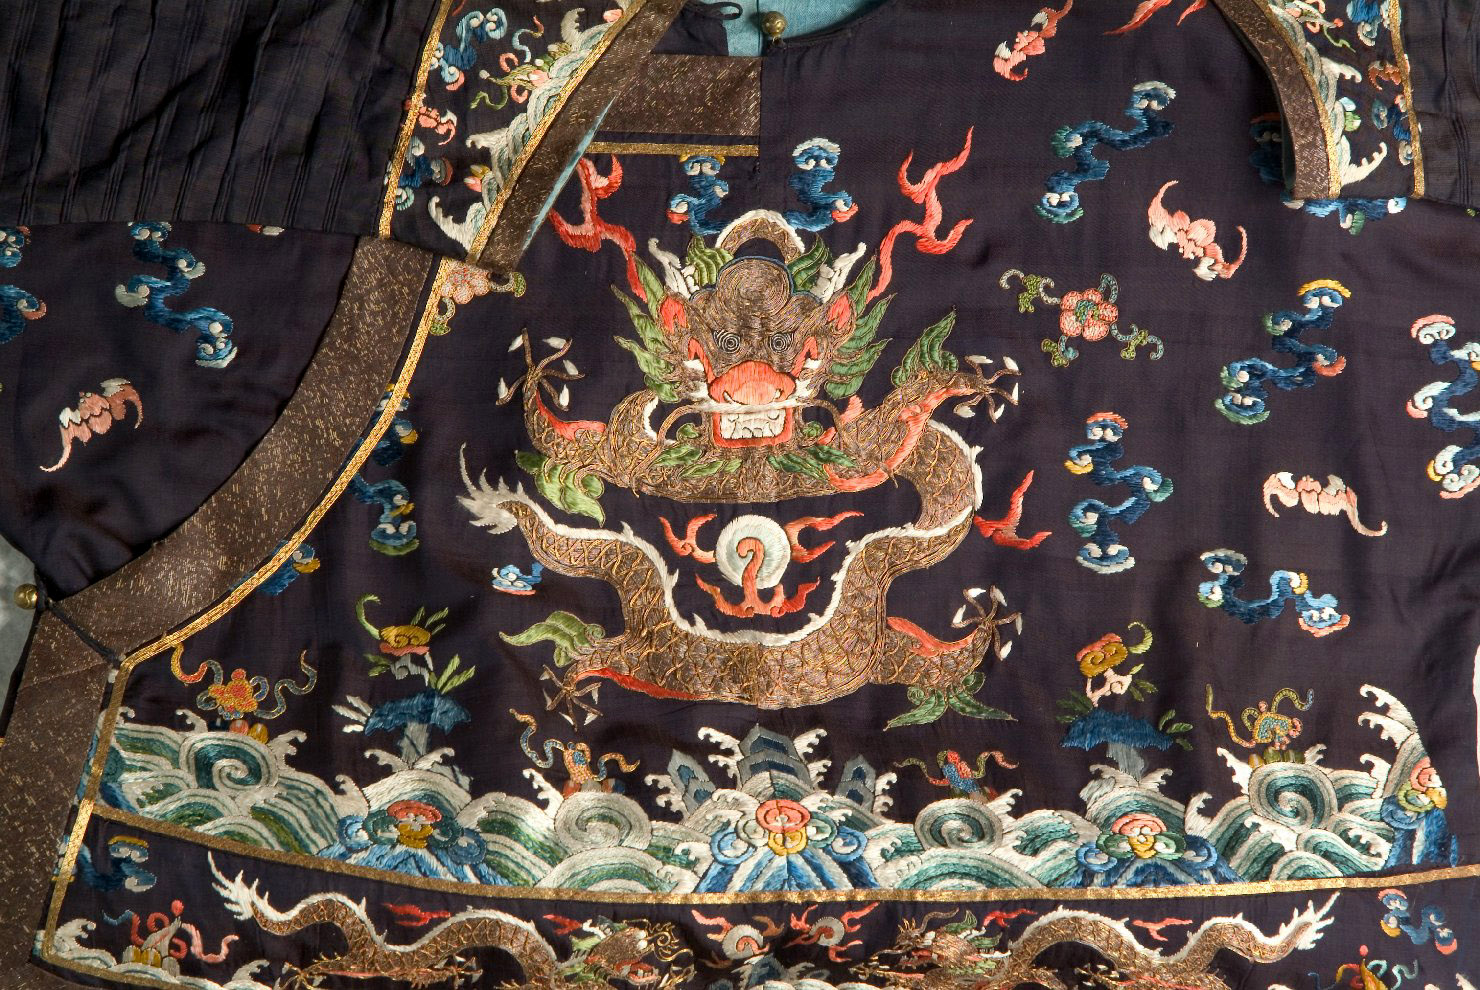 animali fantastici e motivi decorativi fitomorfi (abito, opera isolata) - manifattura cinese (secc. XVII/ XX)